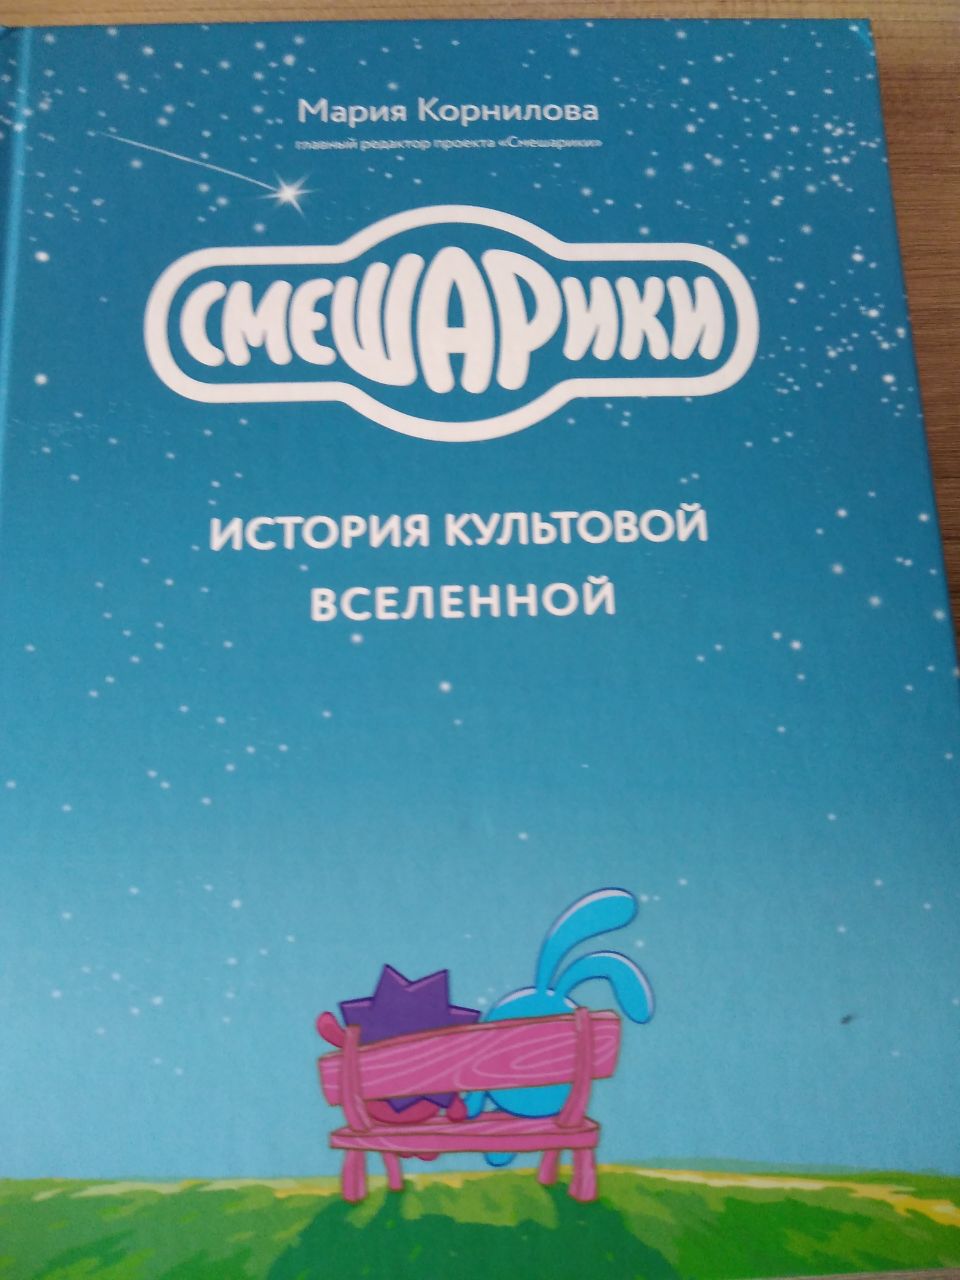 Обзор на новую книгу от Смешариков.